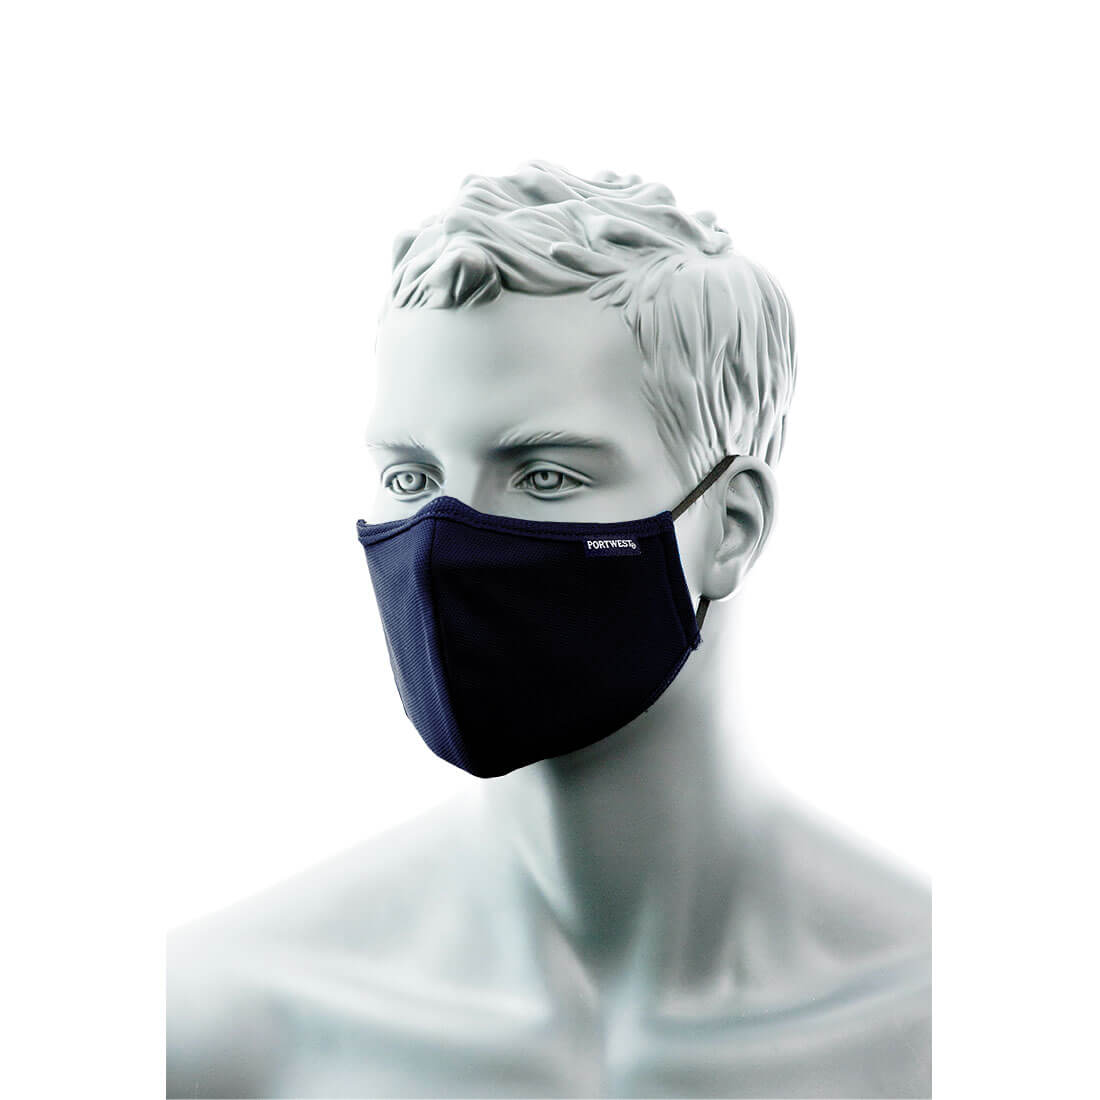 Kolmikerroksinen antimikrobinen kangasmaski nenäsillalla esim. silmälasien käyttäjille (25kpl)  CV35-1